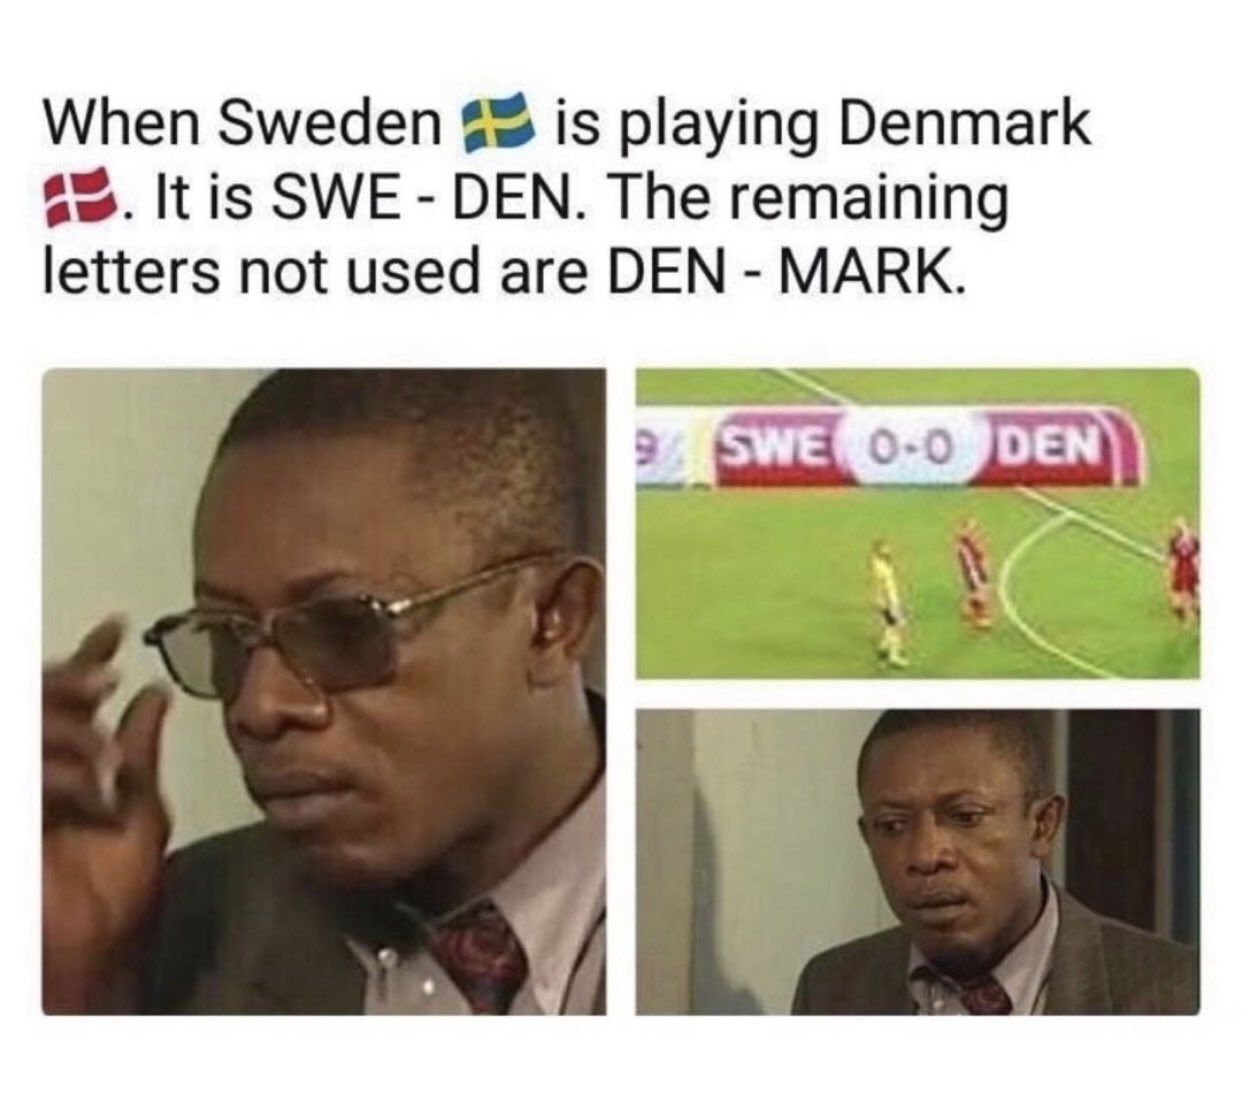 SWE - DEN